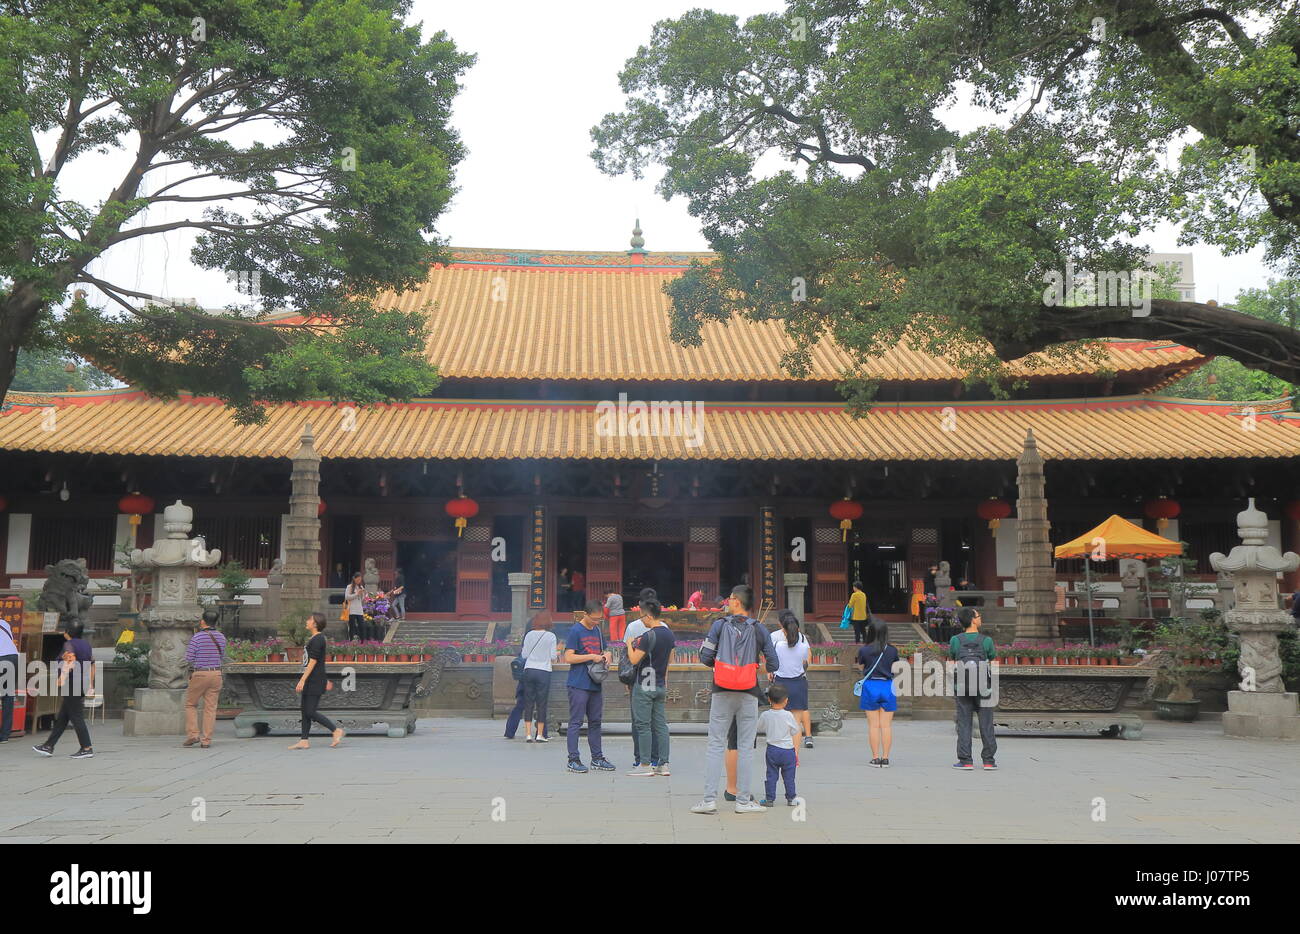 Personnes visitent le temple Guangxiao à Guangzhou en Chine. Guangxiao Temple est un des plus anciens temples bouddhistes à Guangzhou. Banque D'Images